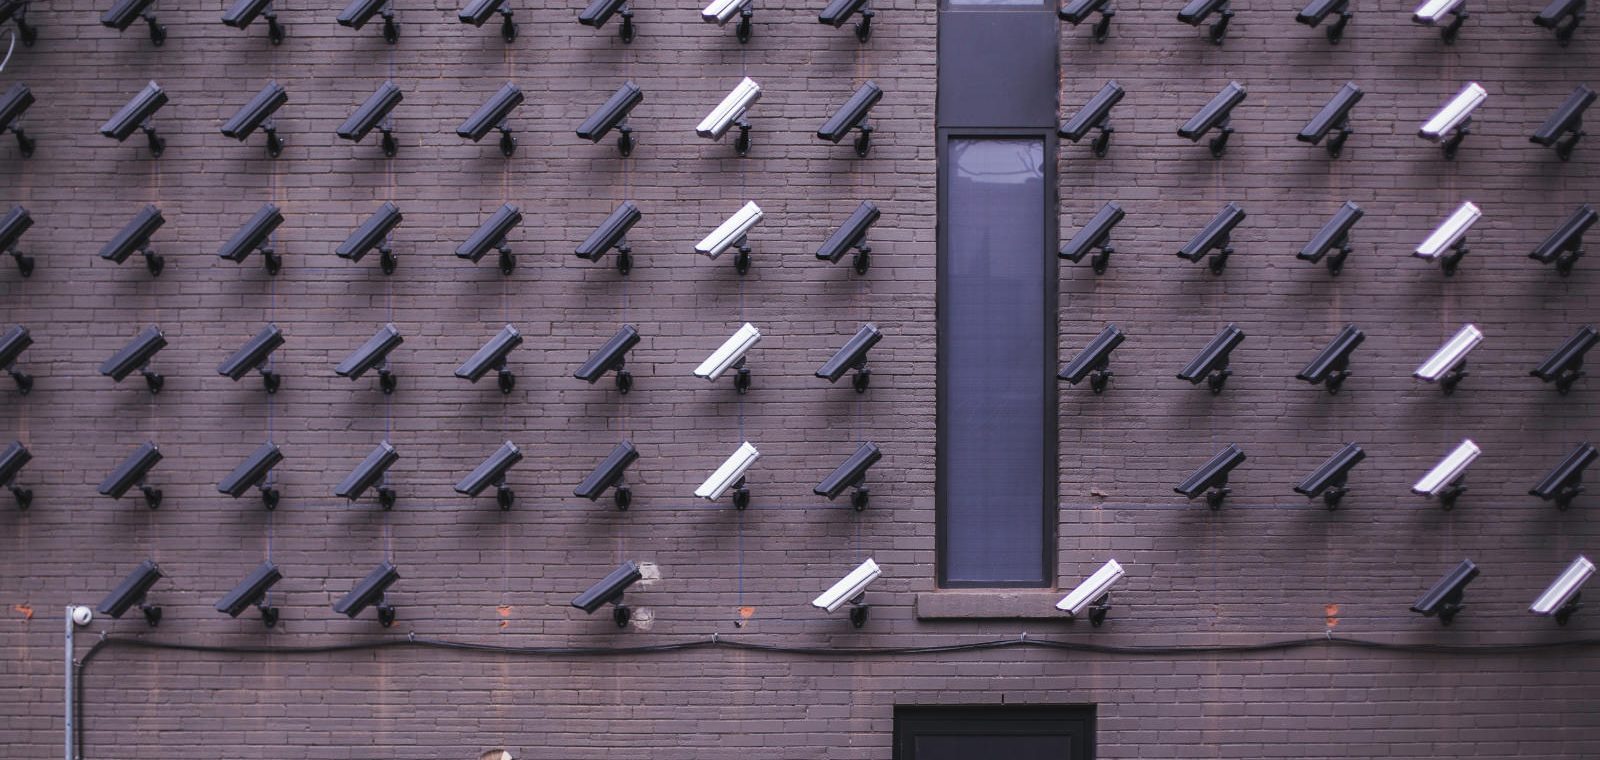 Caméra de surveillance vraies et fausses - Fausses caméras de sécurité = fausse bonne idée